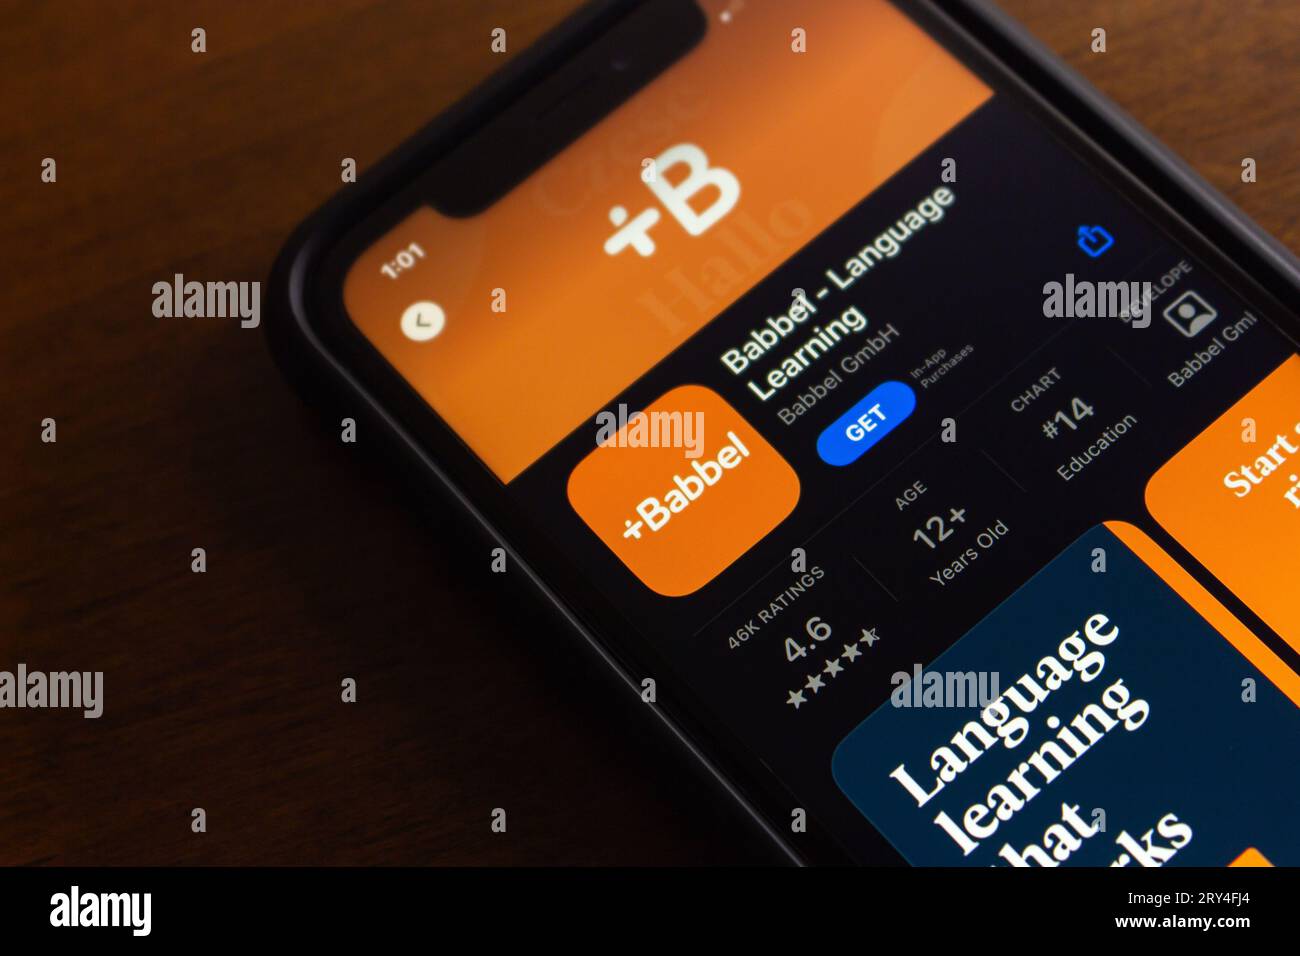 Babbel app vu dans l'App Store dans l'écran de l'iPhone. Babbel est un logiciel d'apprentissage des langues et une plate-forme d'apprentissage en ligne en allemand par abonnement Banque D'Images